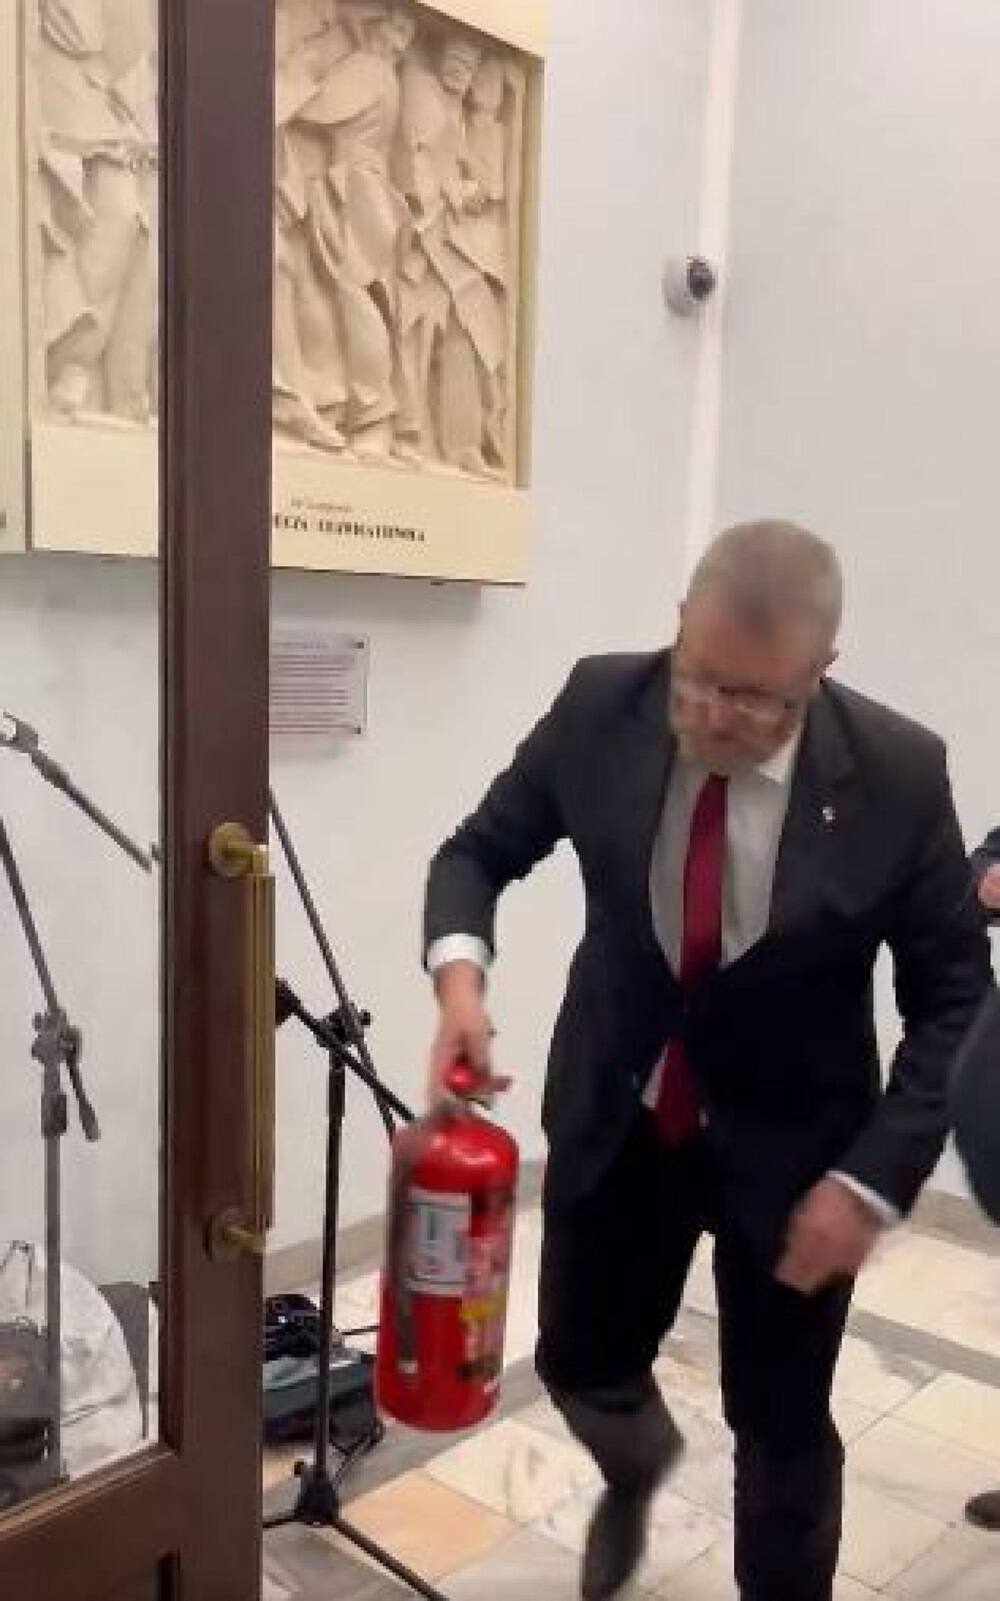 Il deputato estremista del partito Confederazione, Grzegorz Braun, spegne la menorah - il candelabro simbolo dell'ebraismo - accesa in Parlamento per la festa ebraica di Hanukkah, 12 dicembre 2023. Lo ha riferito la presidenza del Parlamento di Varsavia.    NPK    Frame da X / Ultimora.net - POLITICS   +++ATTENZIONE LA FOTO NON PUO' ESSERE PUBBLICATA O RIPRODOTTA SENZA L'AUTORIZZAZIONE DELLA FONTE DI ORIGINE CUI SI RINVIA+++   +++NO SALES; NO ARCHIVE; EDITORIAL USE ONLY+++